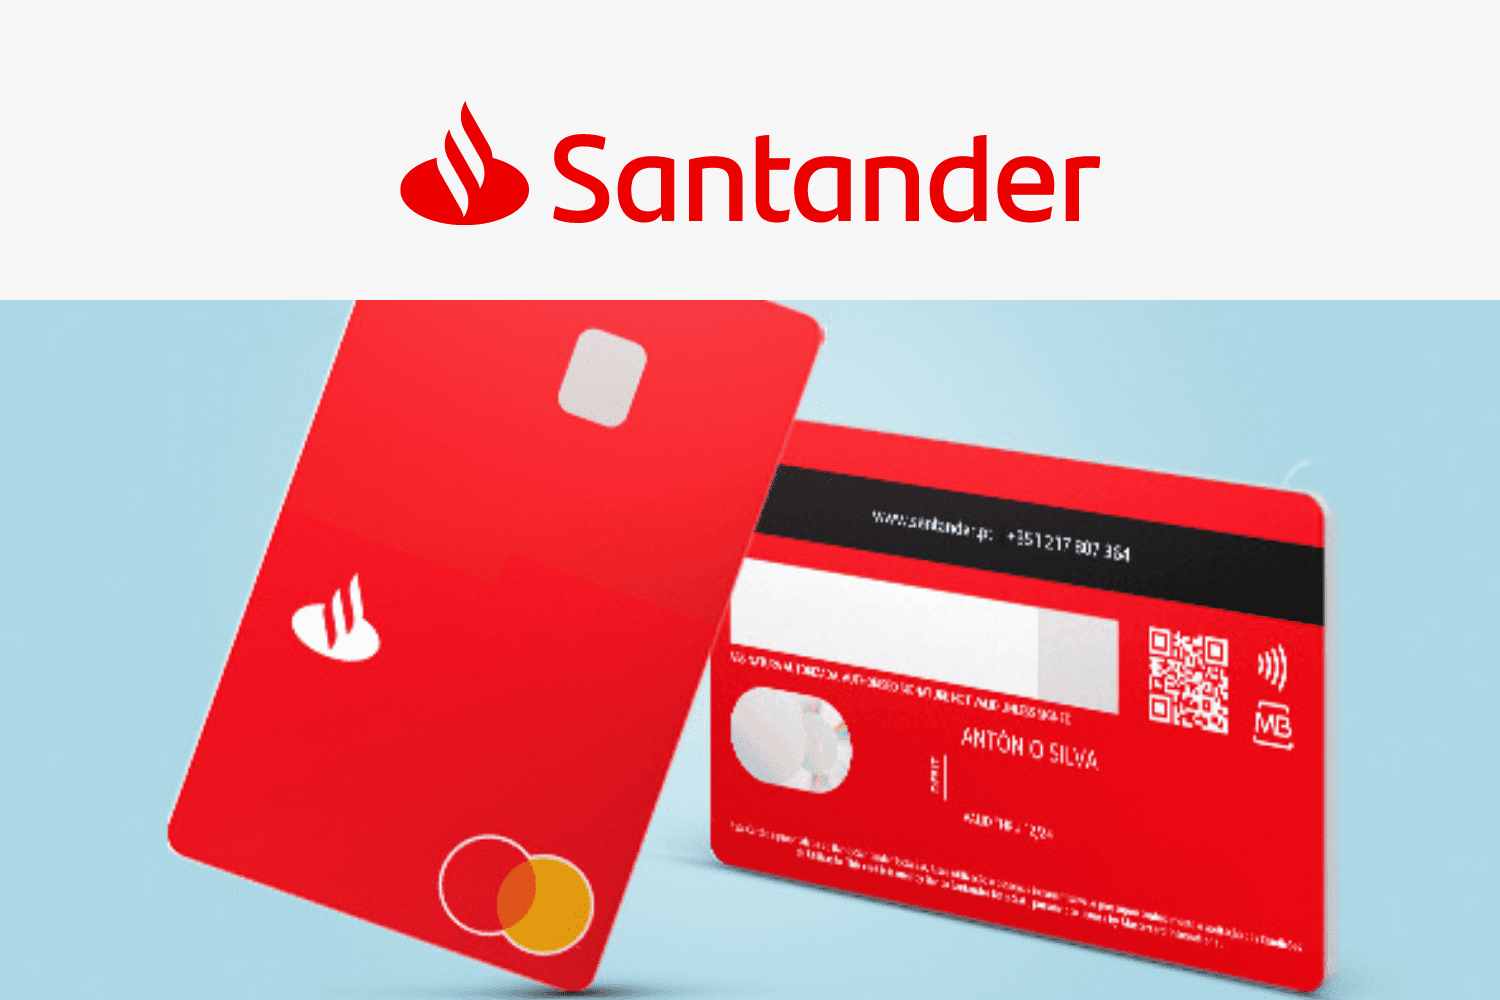 cartão santander vermelho com logo da empresa